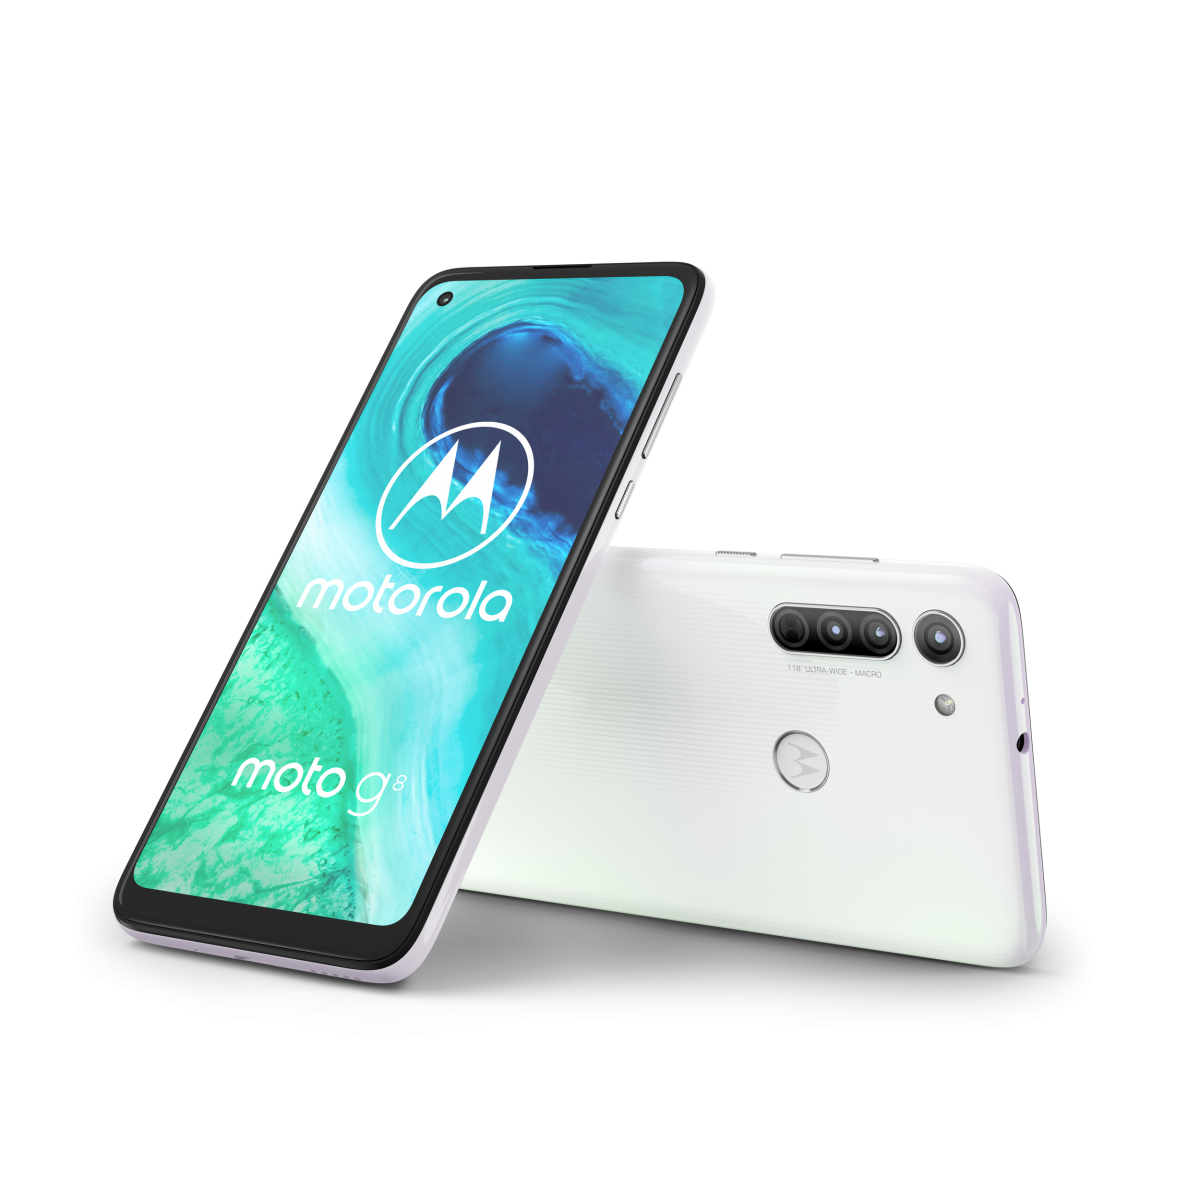 Объявлены российские цены нового бюджетного смартфона Motorola